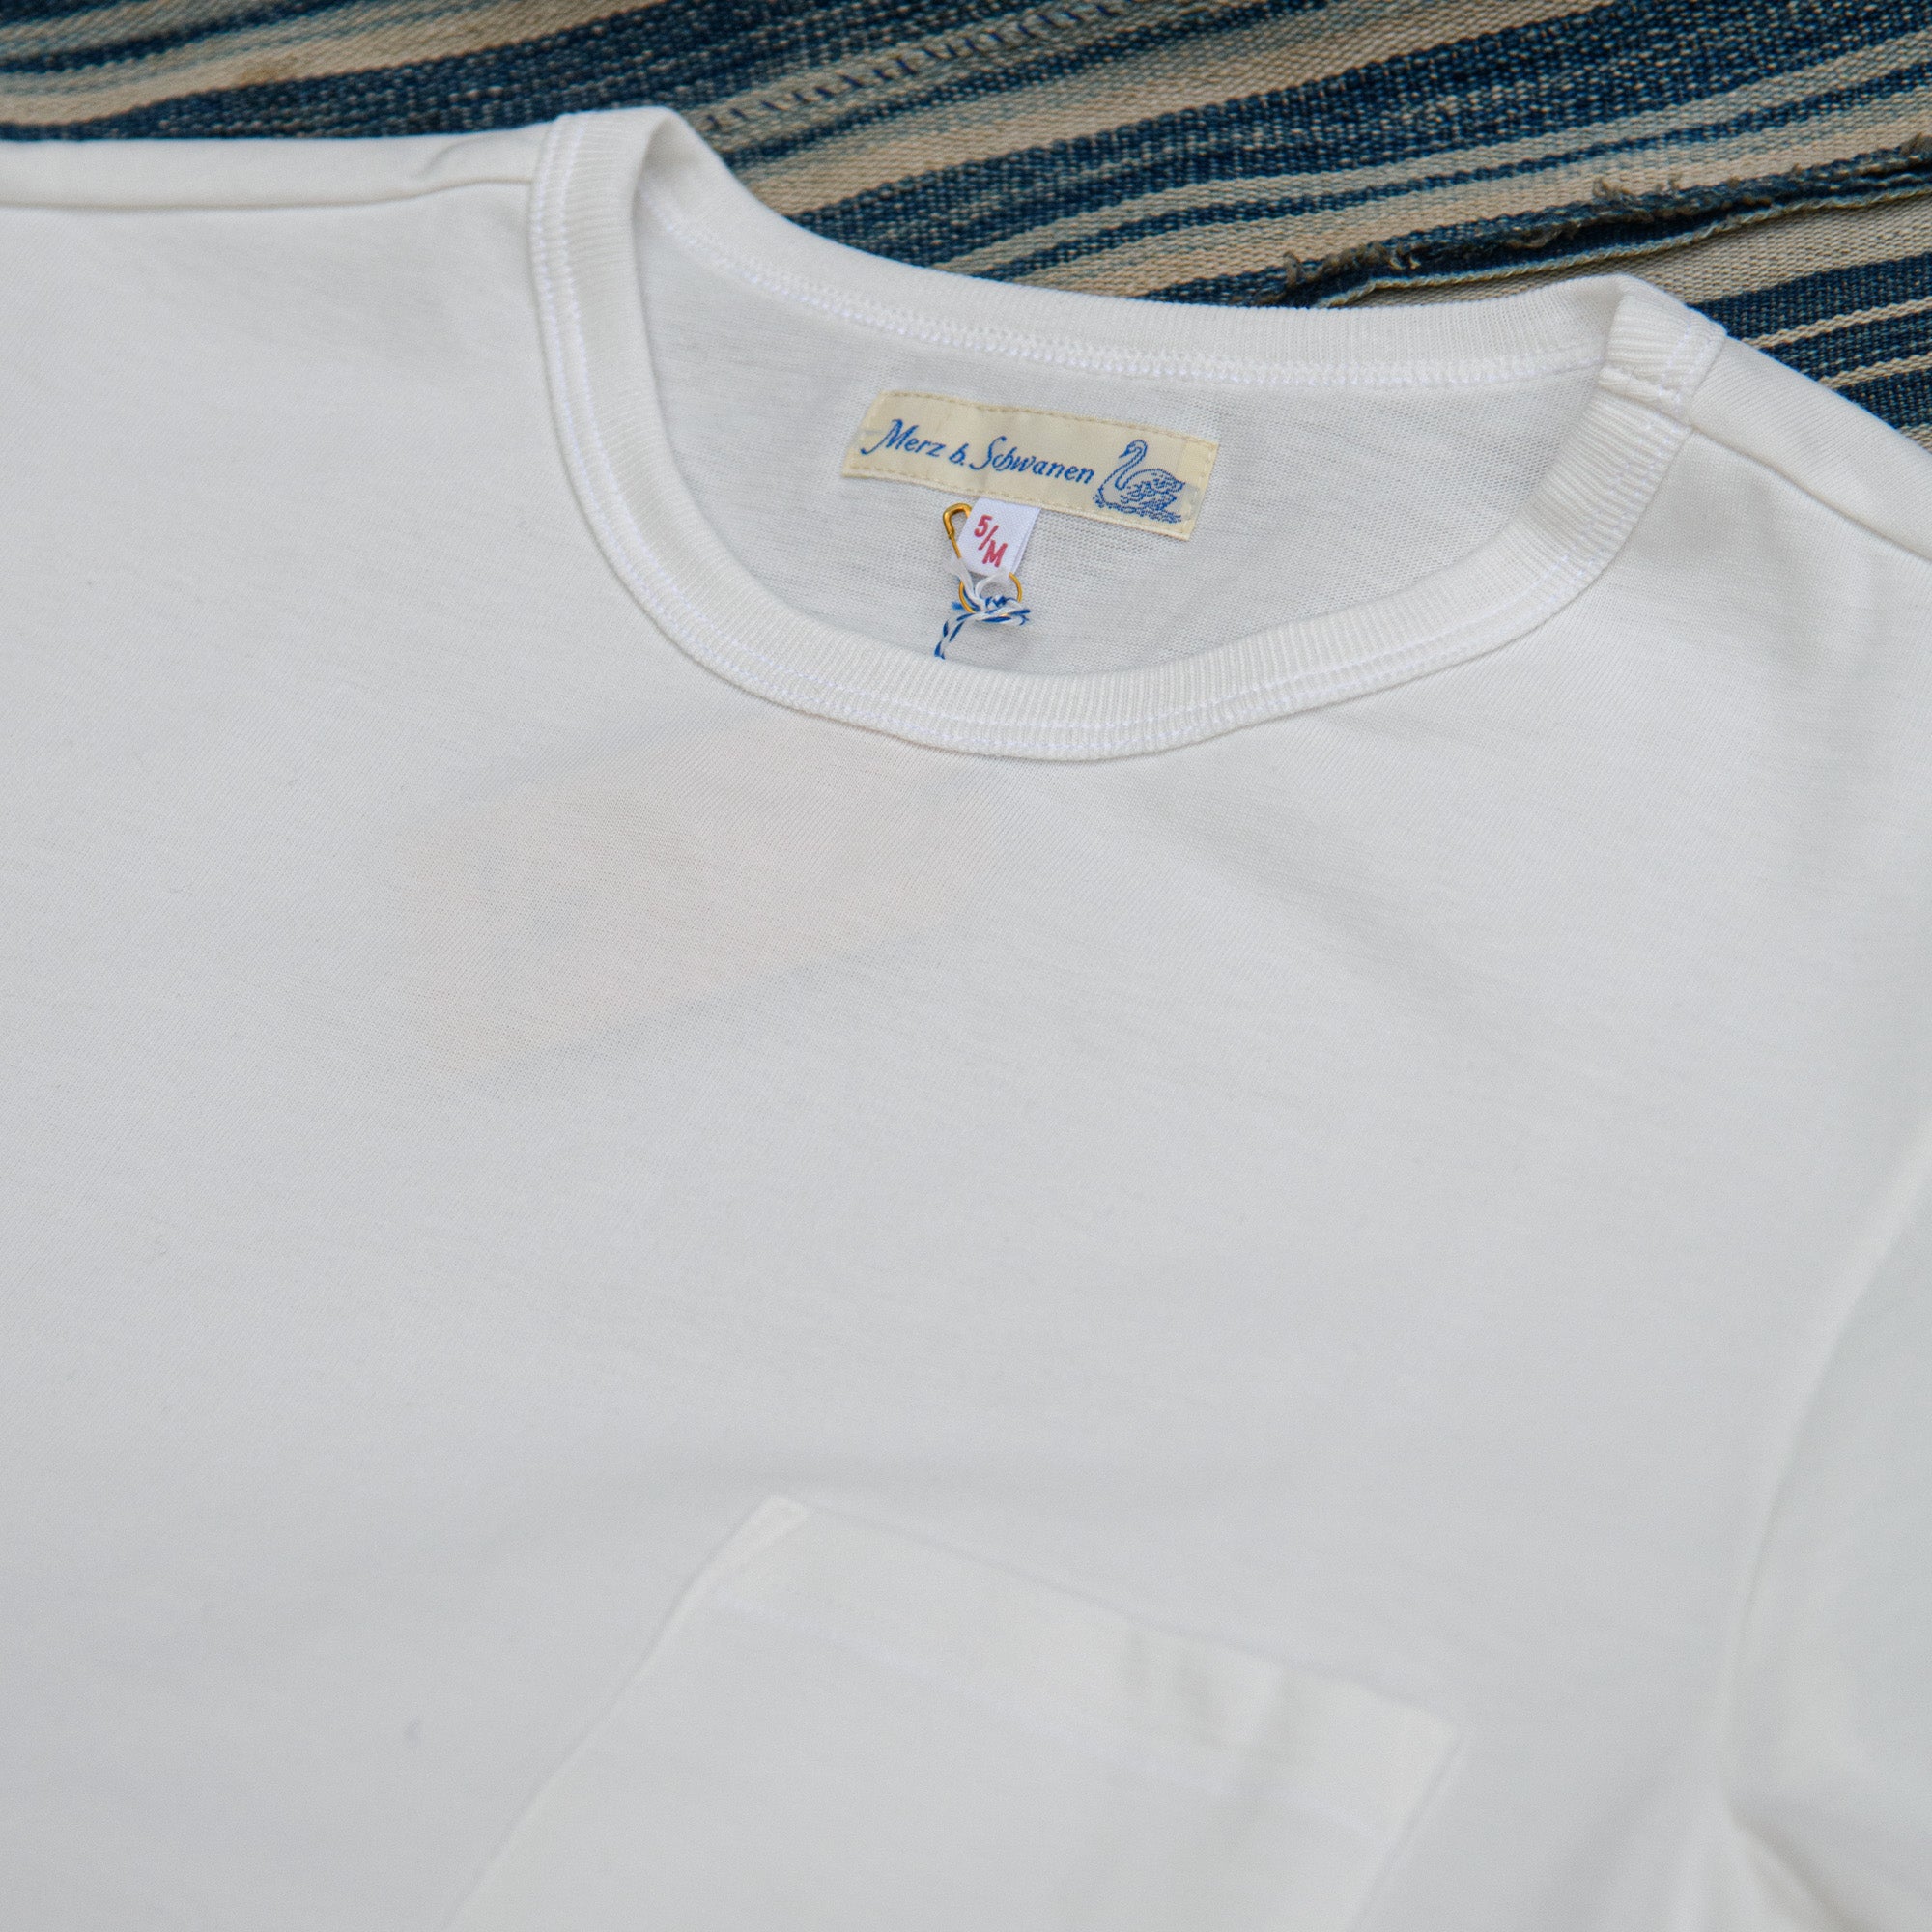 (Europe) – Schwanen Limited Edition 215 Pocket Exclusive Merz Store b T-Shirt White /